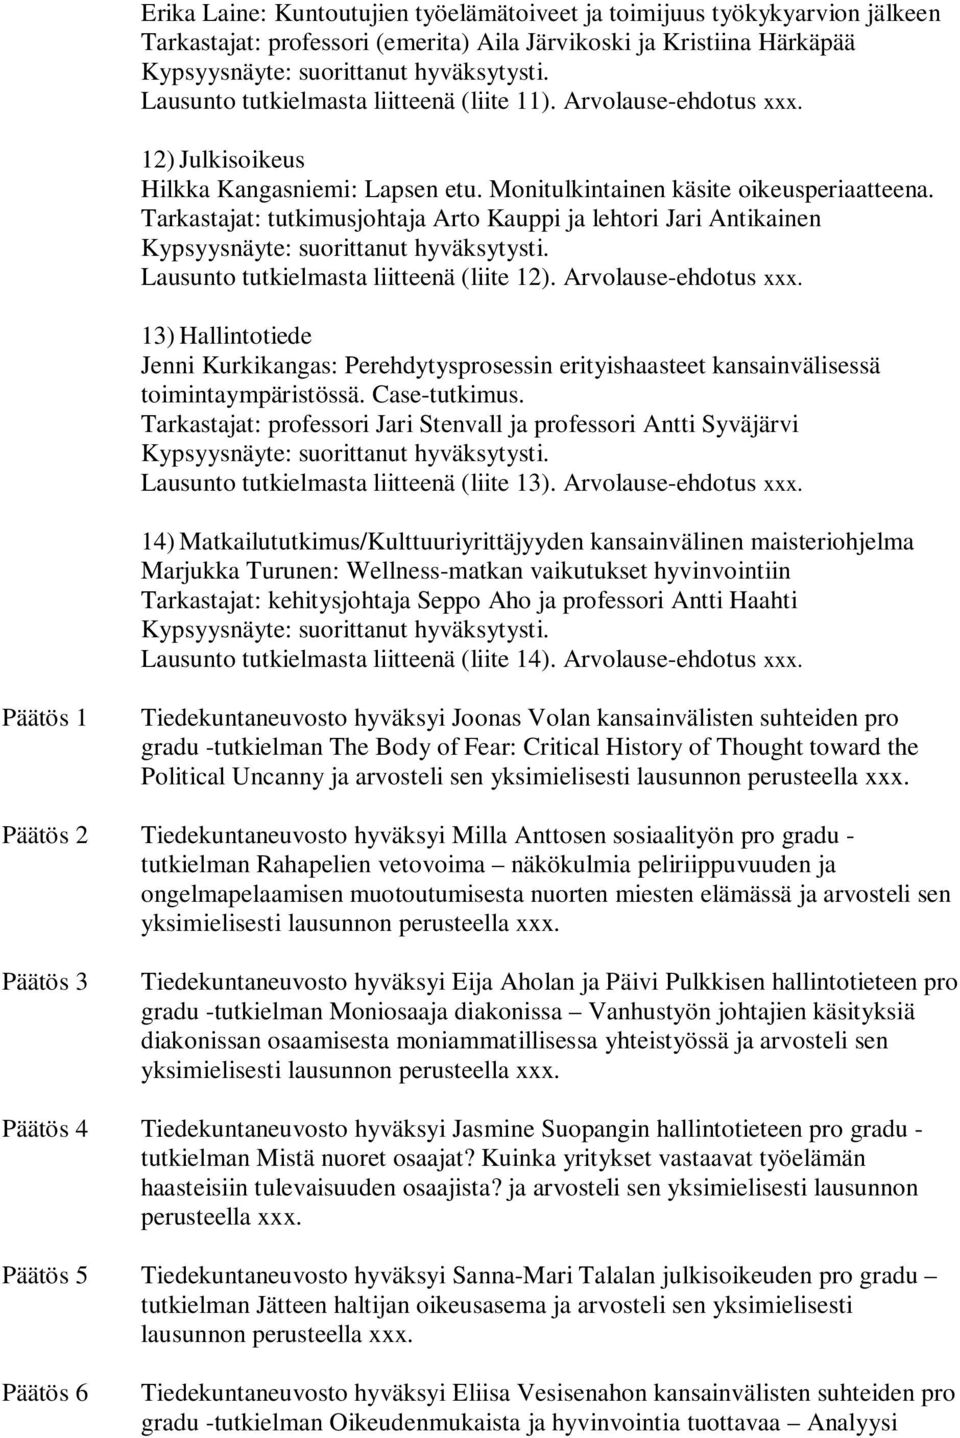 Tarkastajat: tutkimusjohtaja Arto Kauppi ja lehtori Jari Antikainen Lausunto tutkielmasta liitteenä (liite 12). Arvolause-ehdotus xxx.